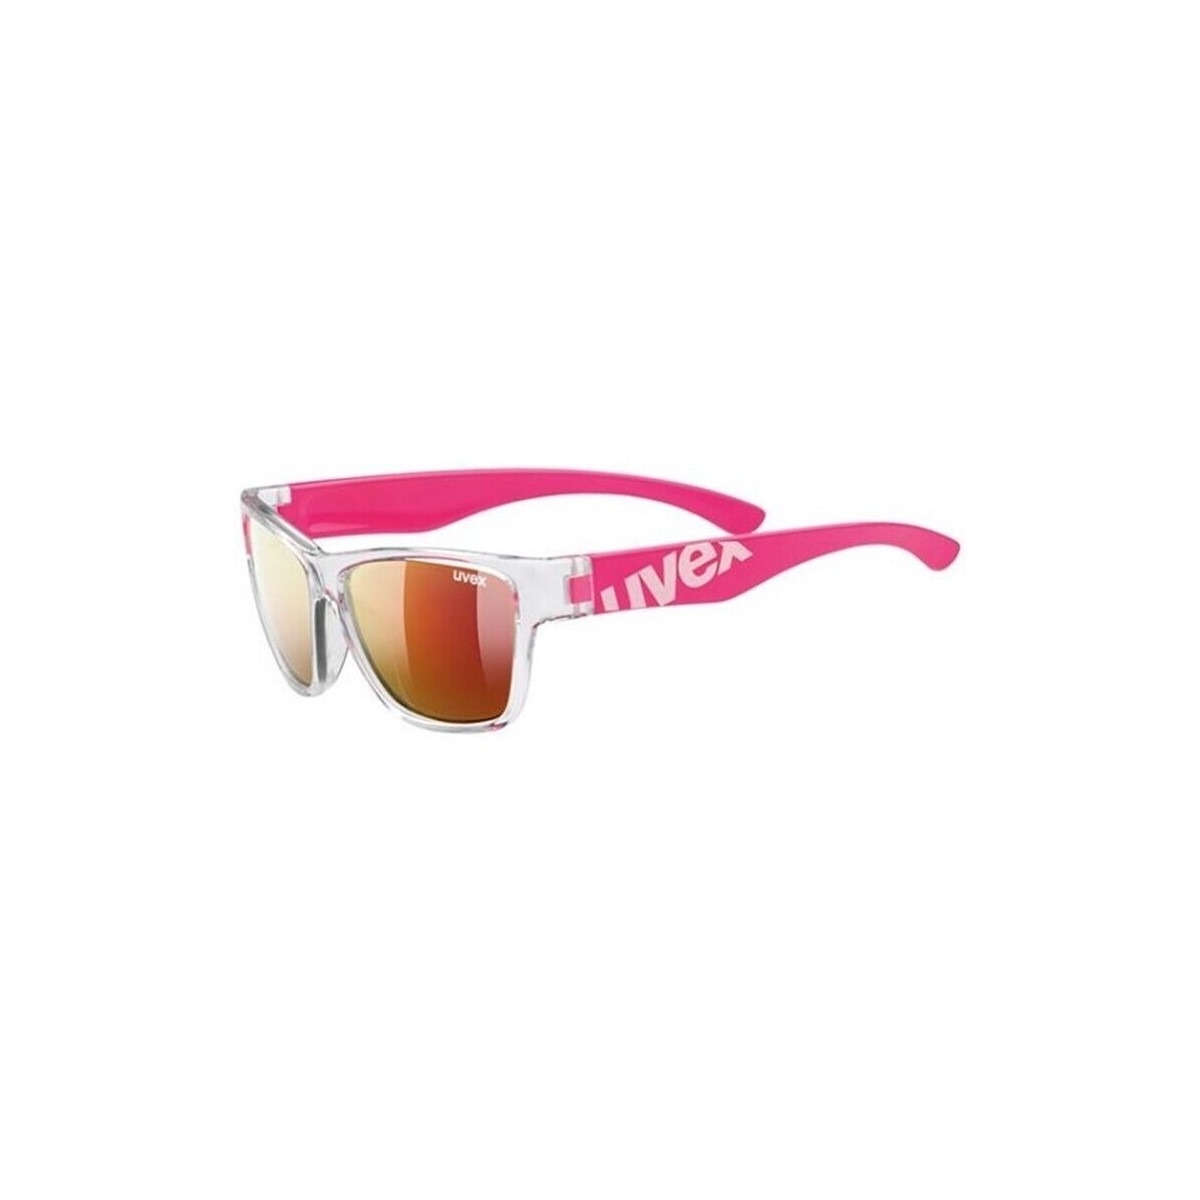 Relógios & jóias óculos de sol Uvex Sportstyle 508 Rosa